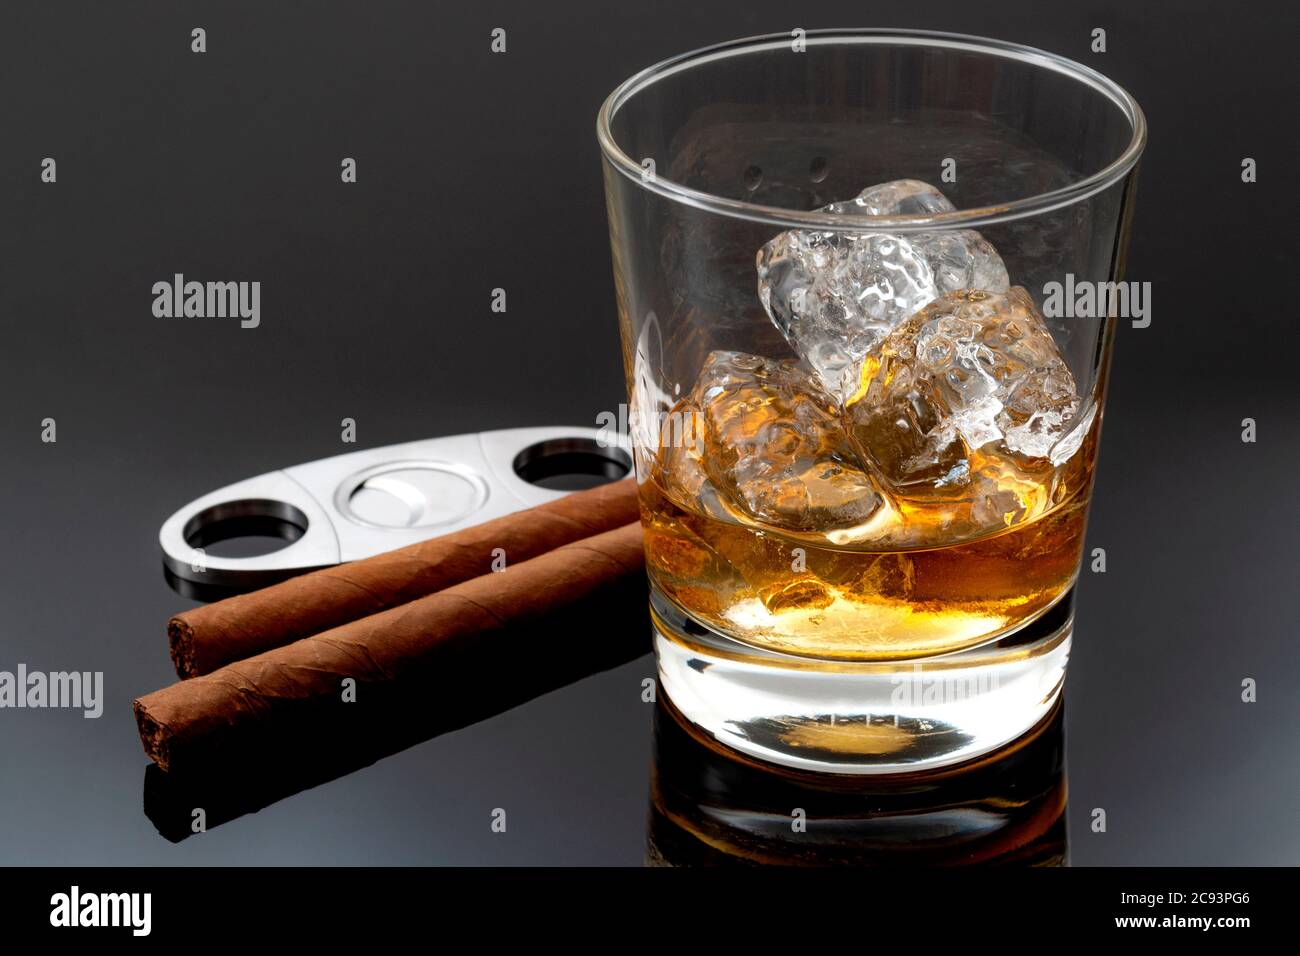 Fumo di tabacco e alcol concetto di bere con bicchiere di whisky sulle rocce, sigari, tagliasigari in metallo e ghiaccio su sfondo scuro Foto Stock